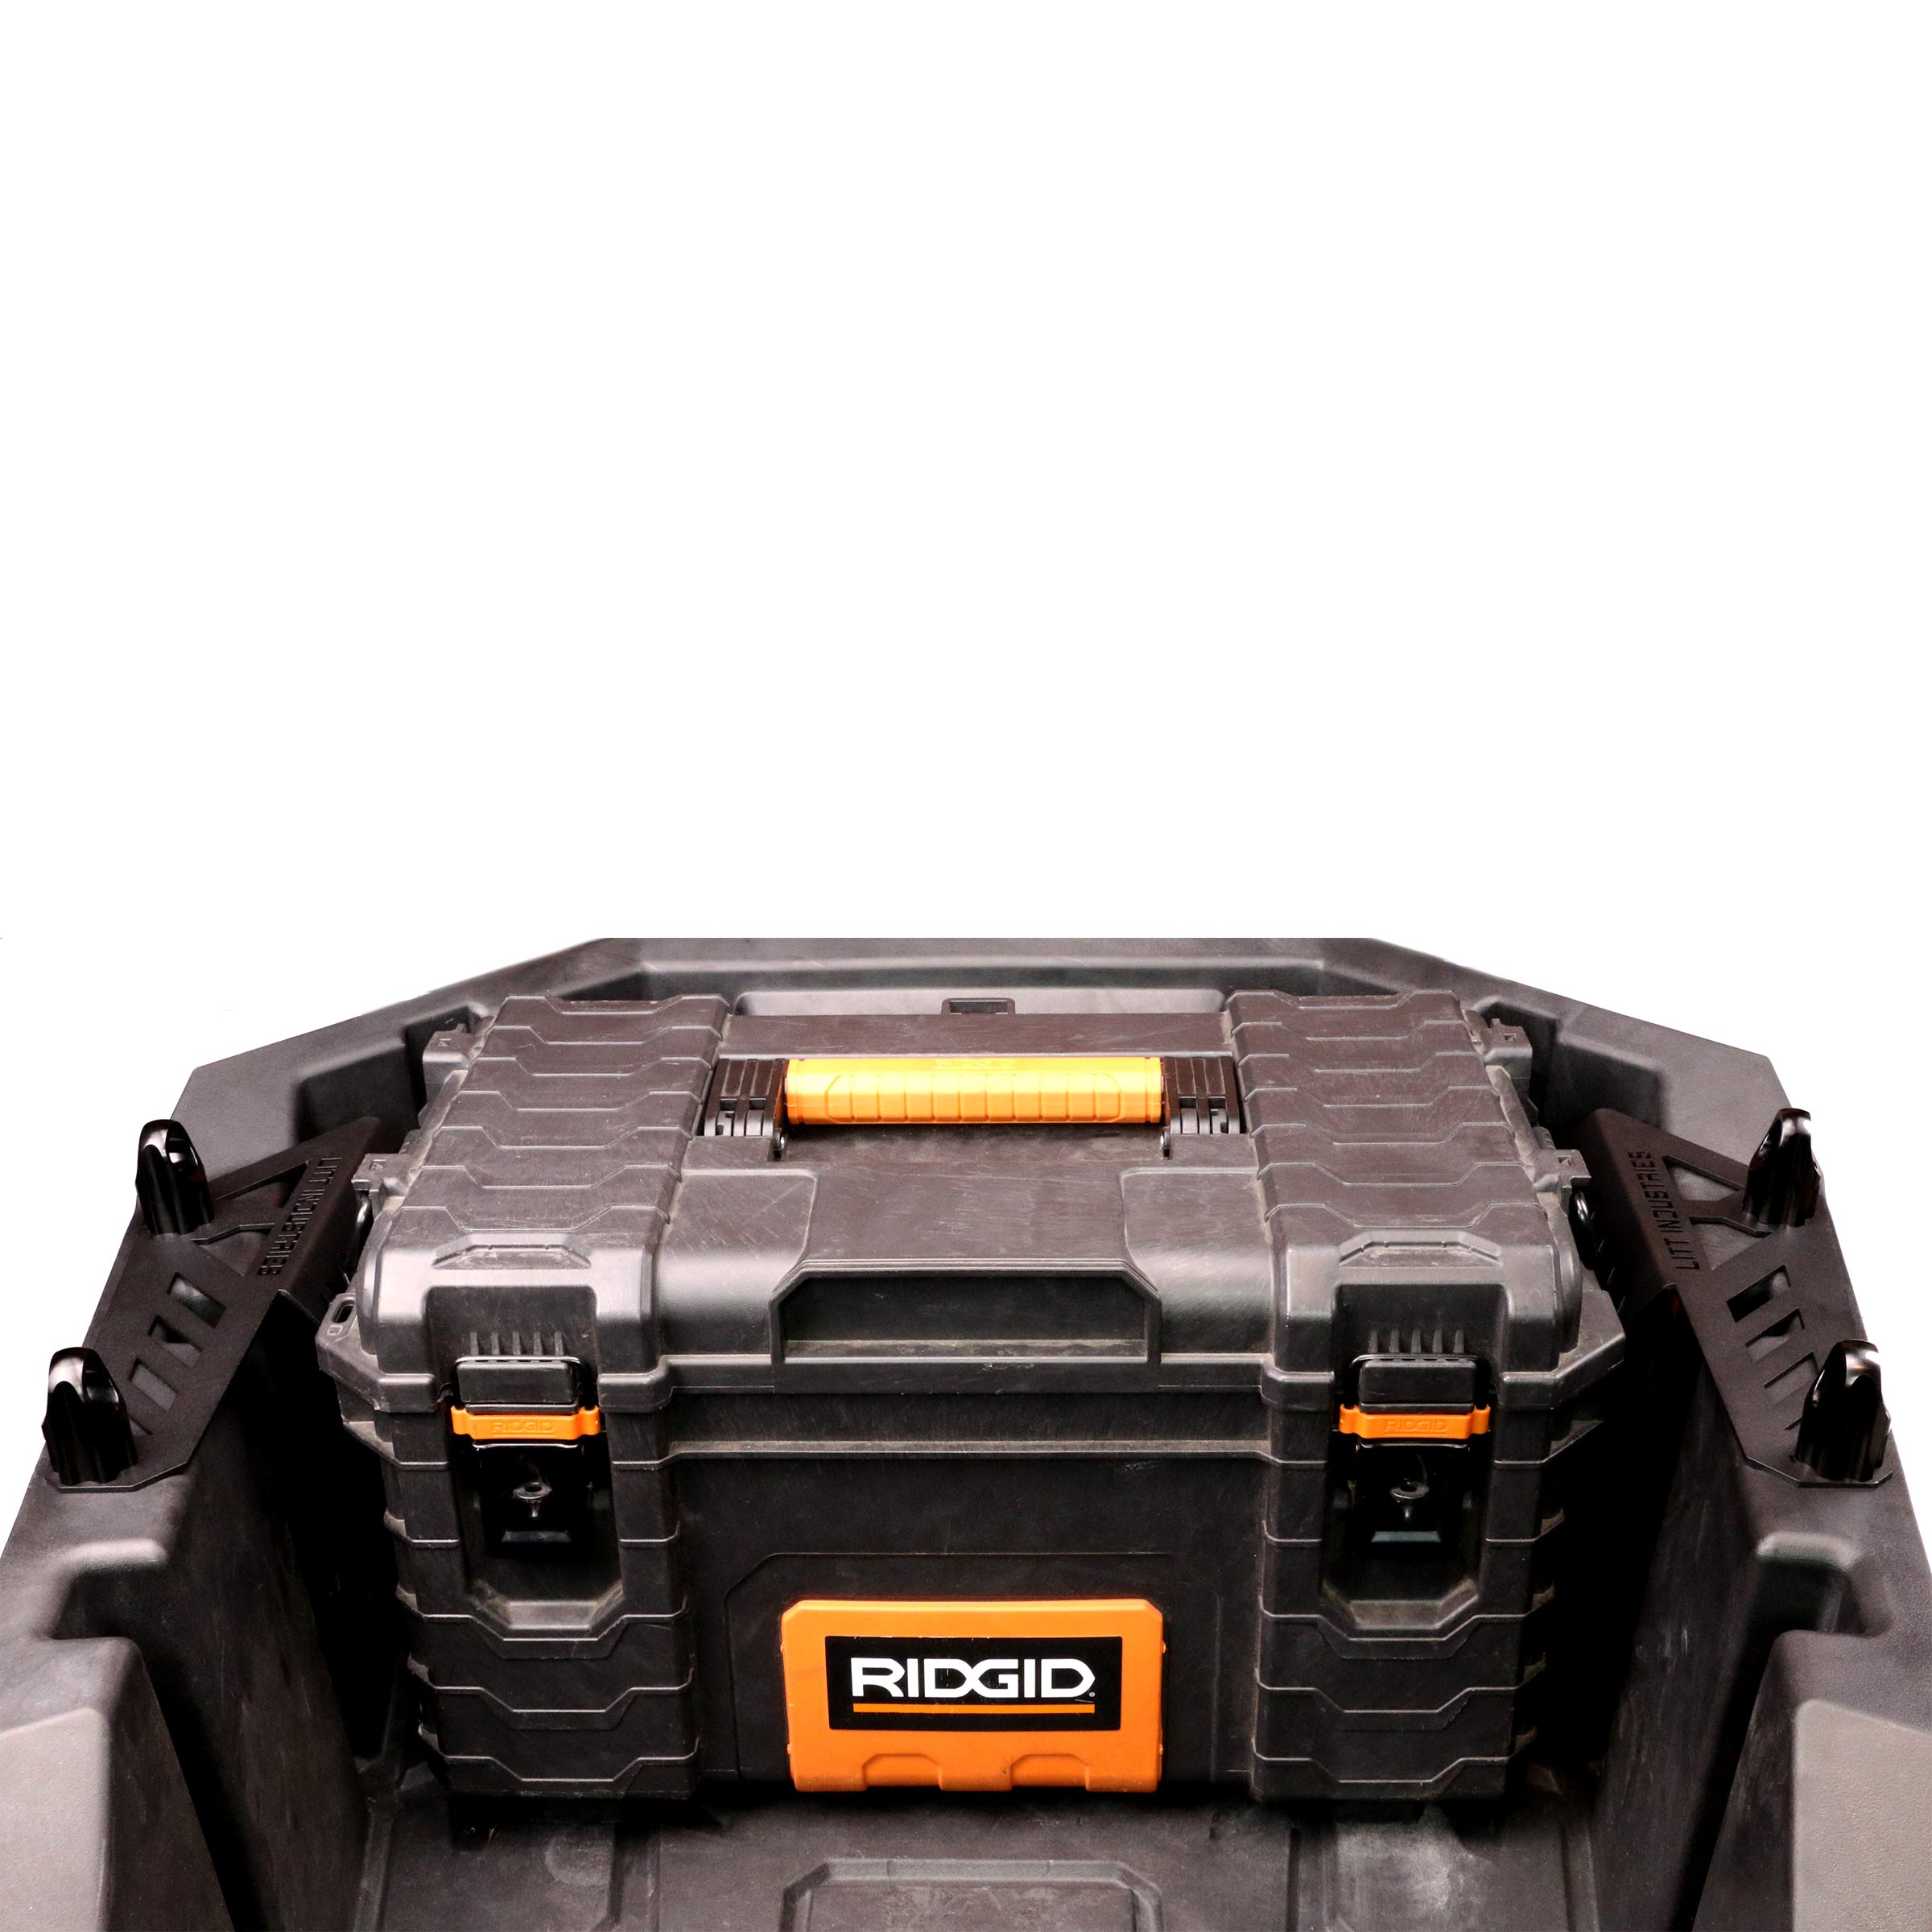 Ridgid Gen 1 Toolbox mounted in RZR PRO XP bed with PRO XP gen 1 mounts by Litt Industries